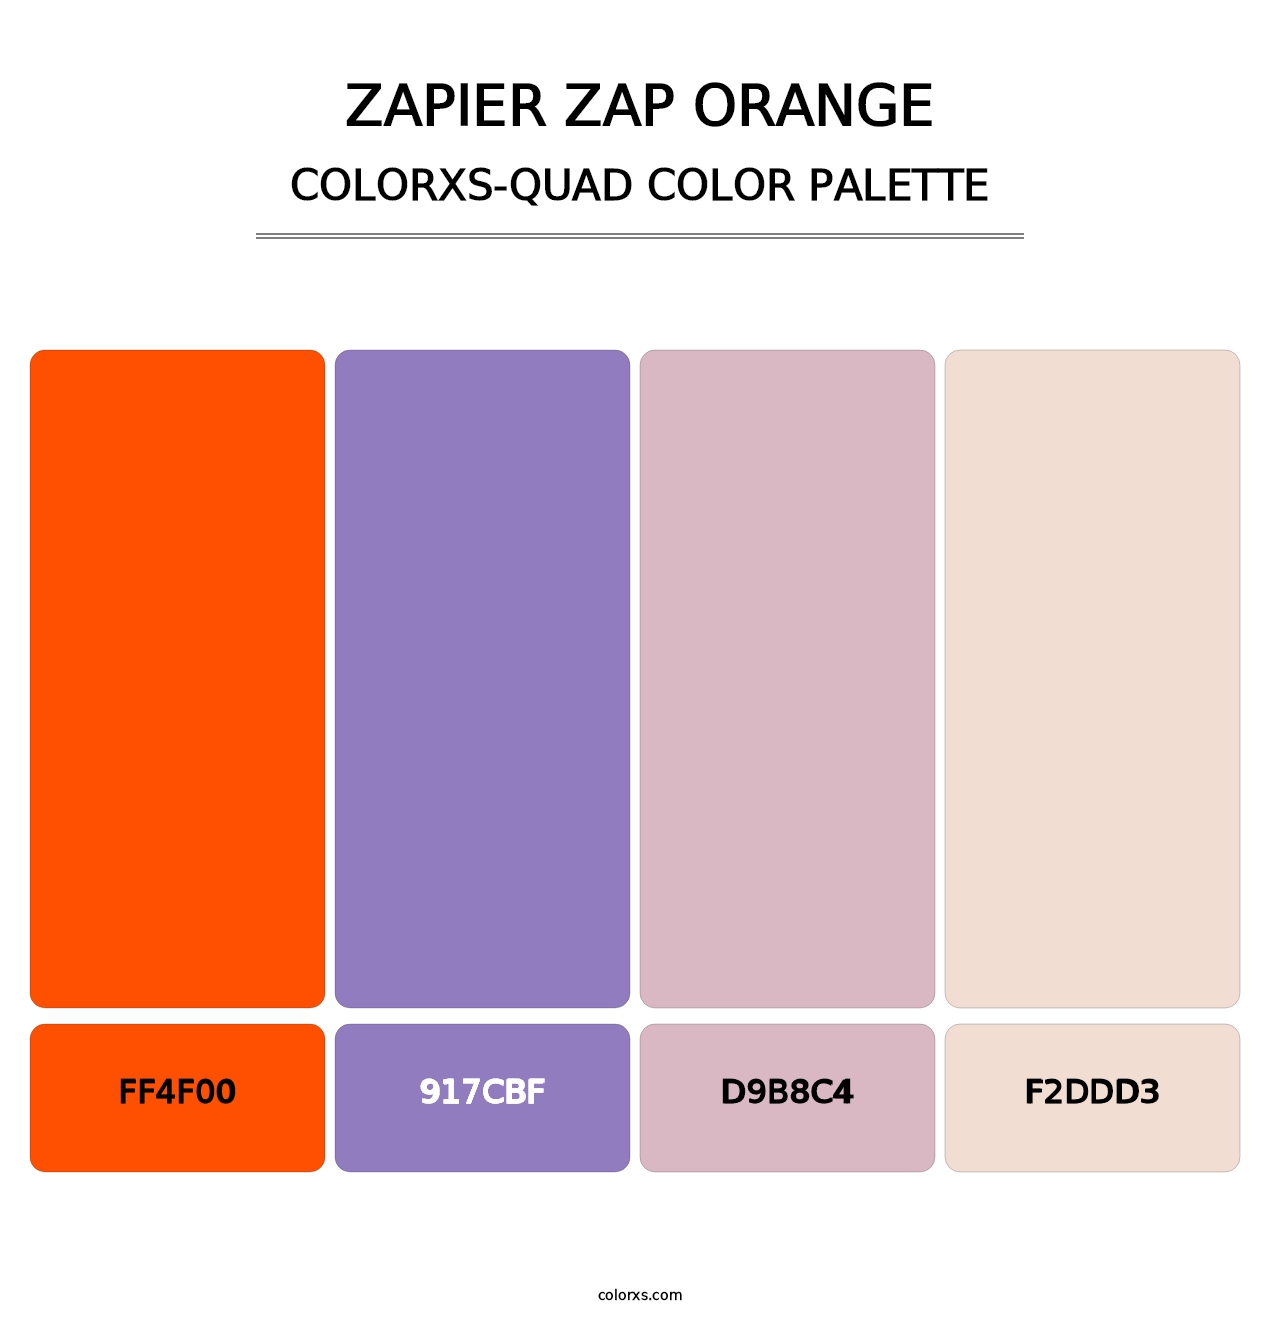 Zapier Zap Orange - Colorxs Quad Palette